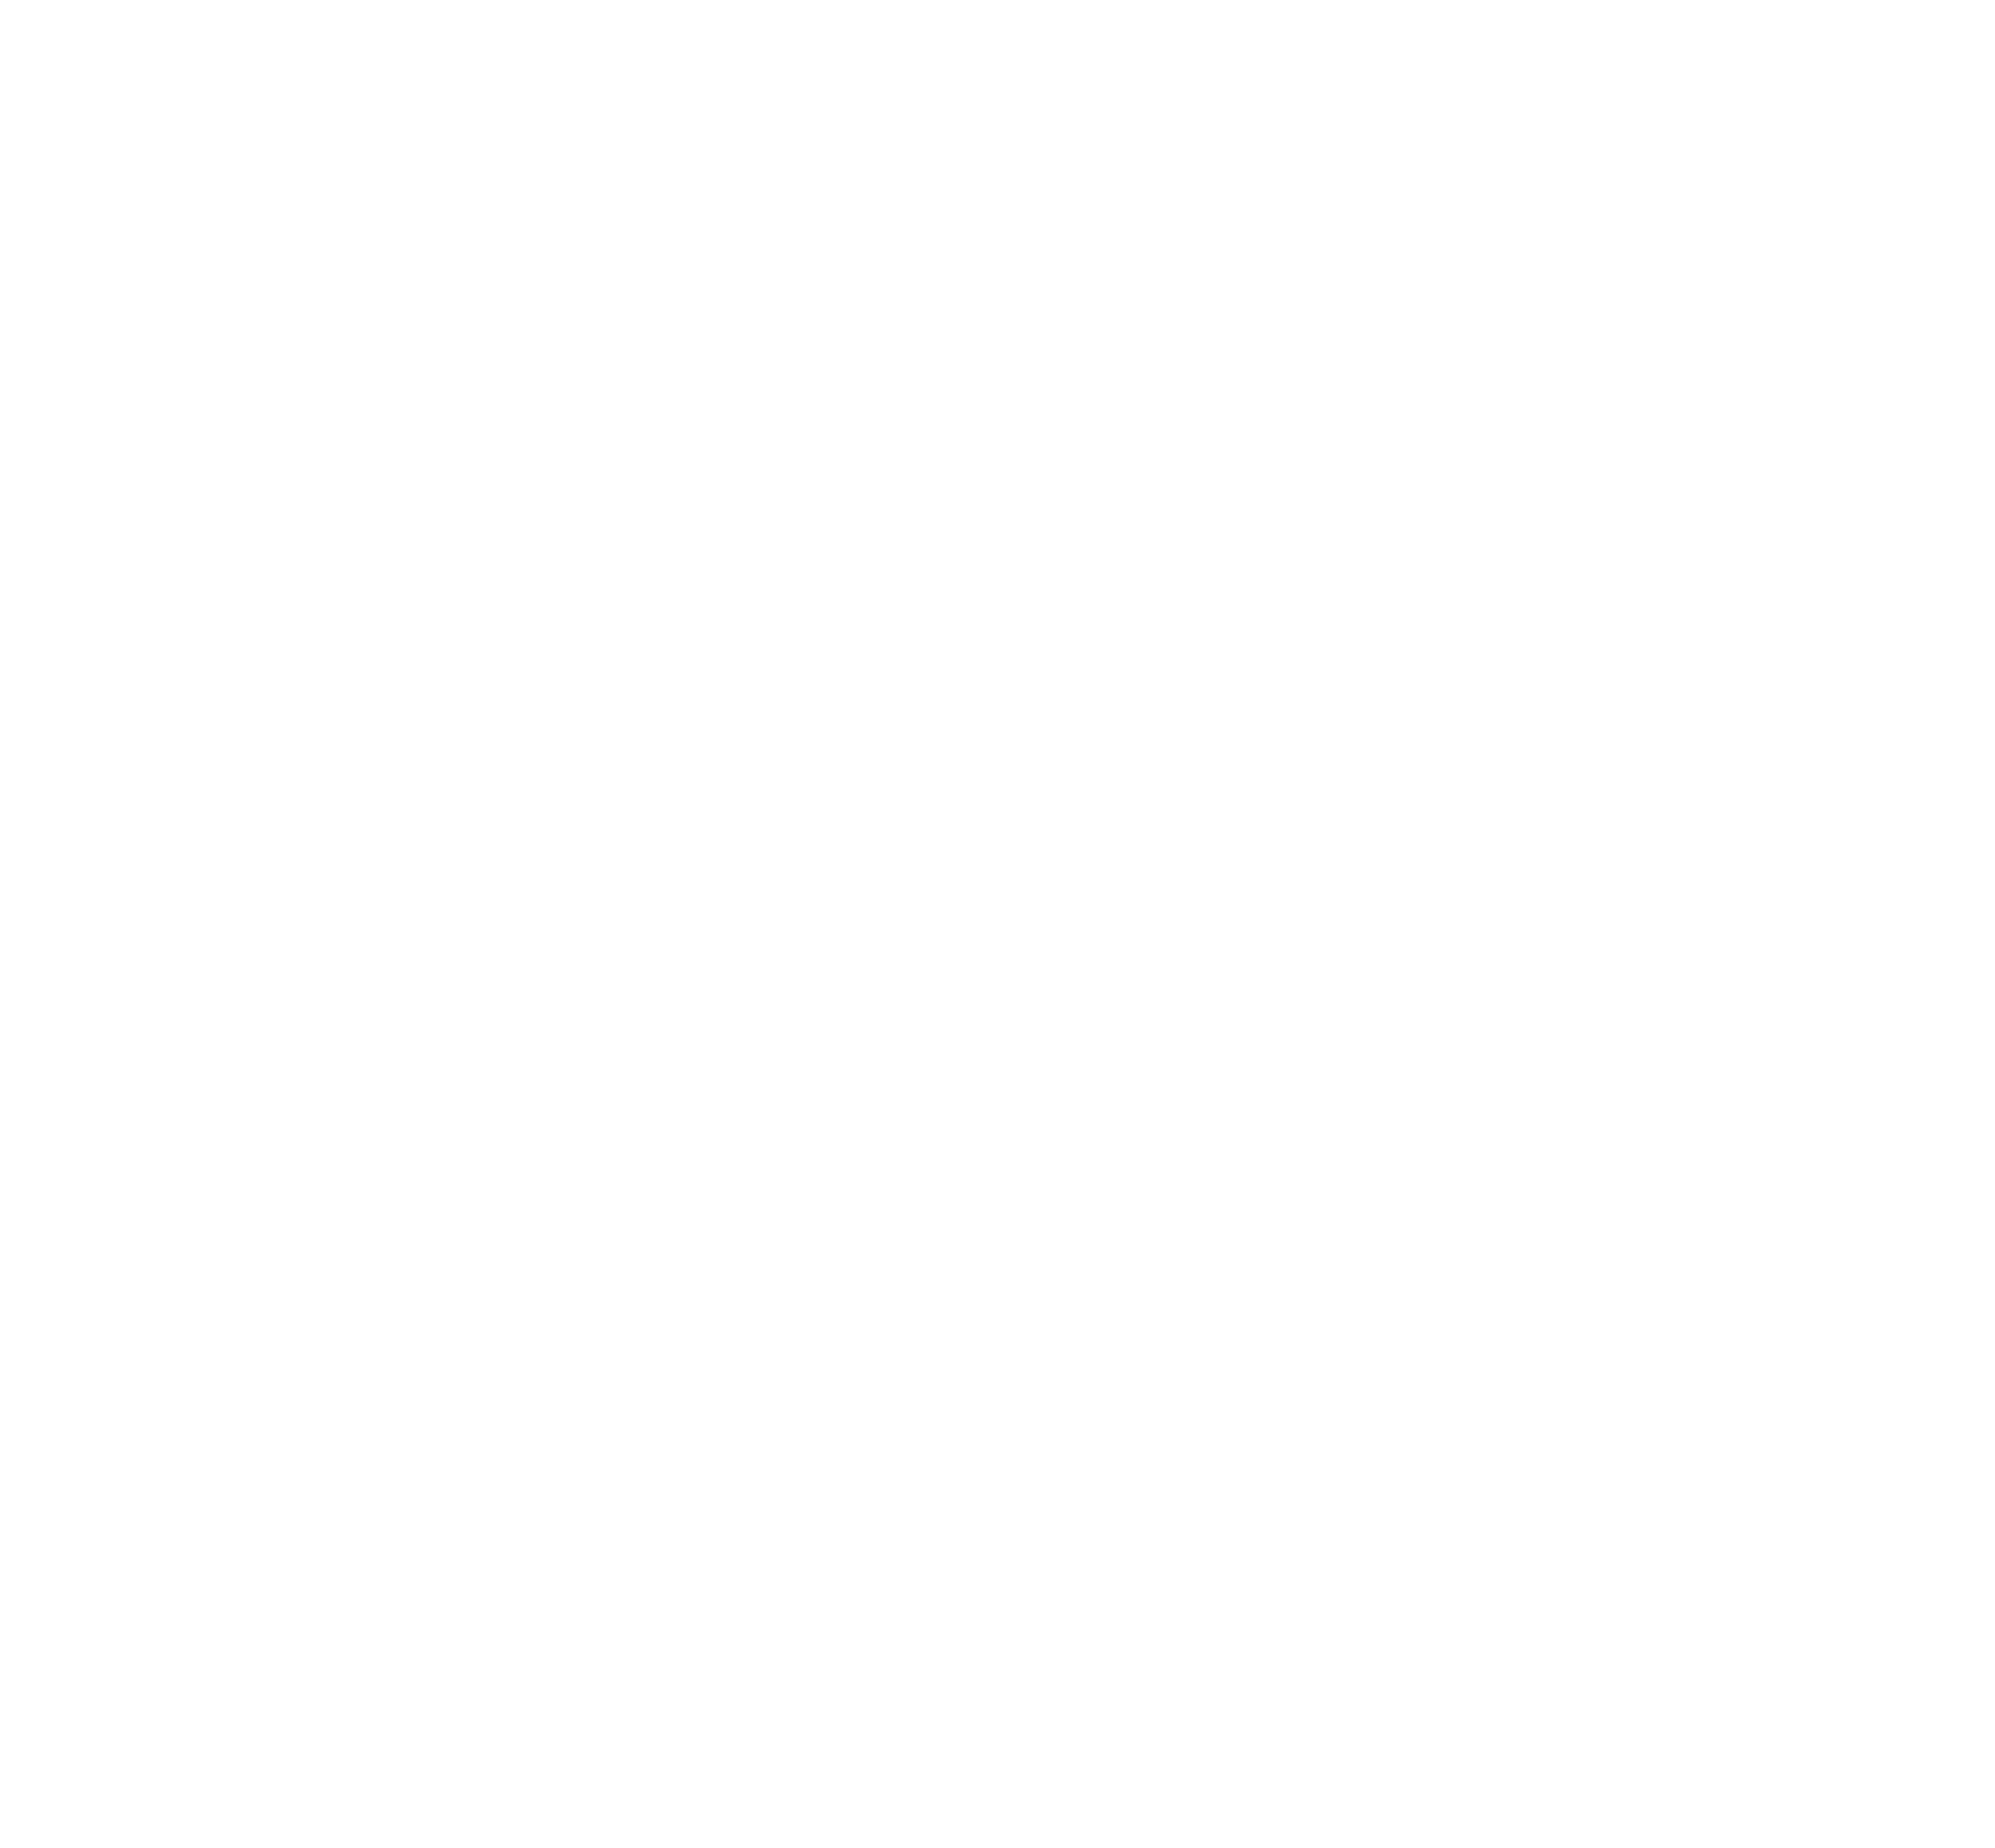 CareCenter